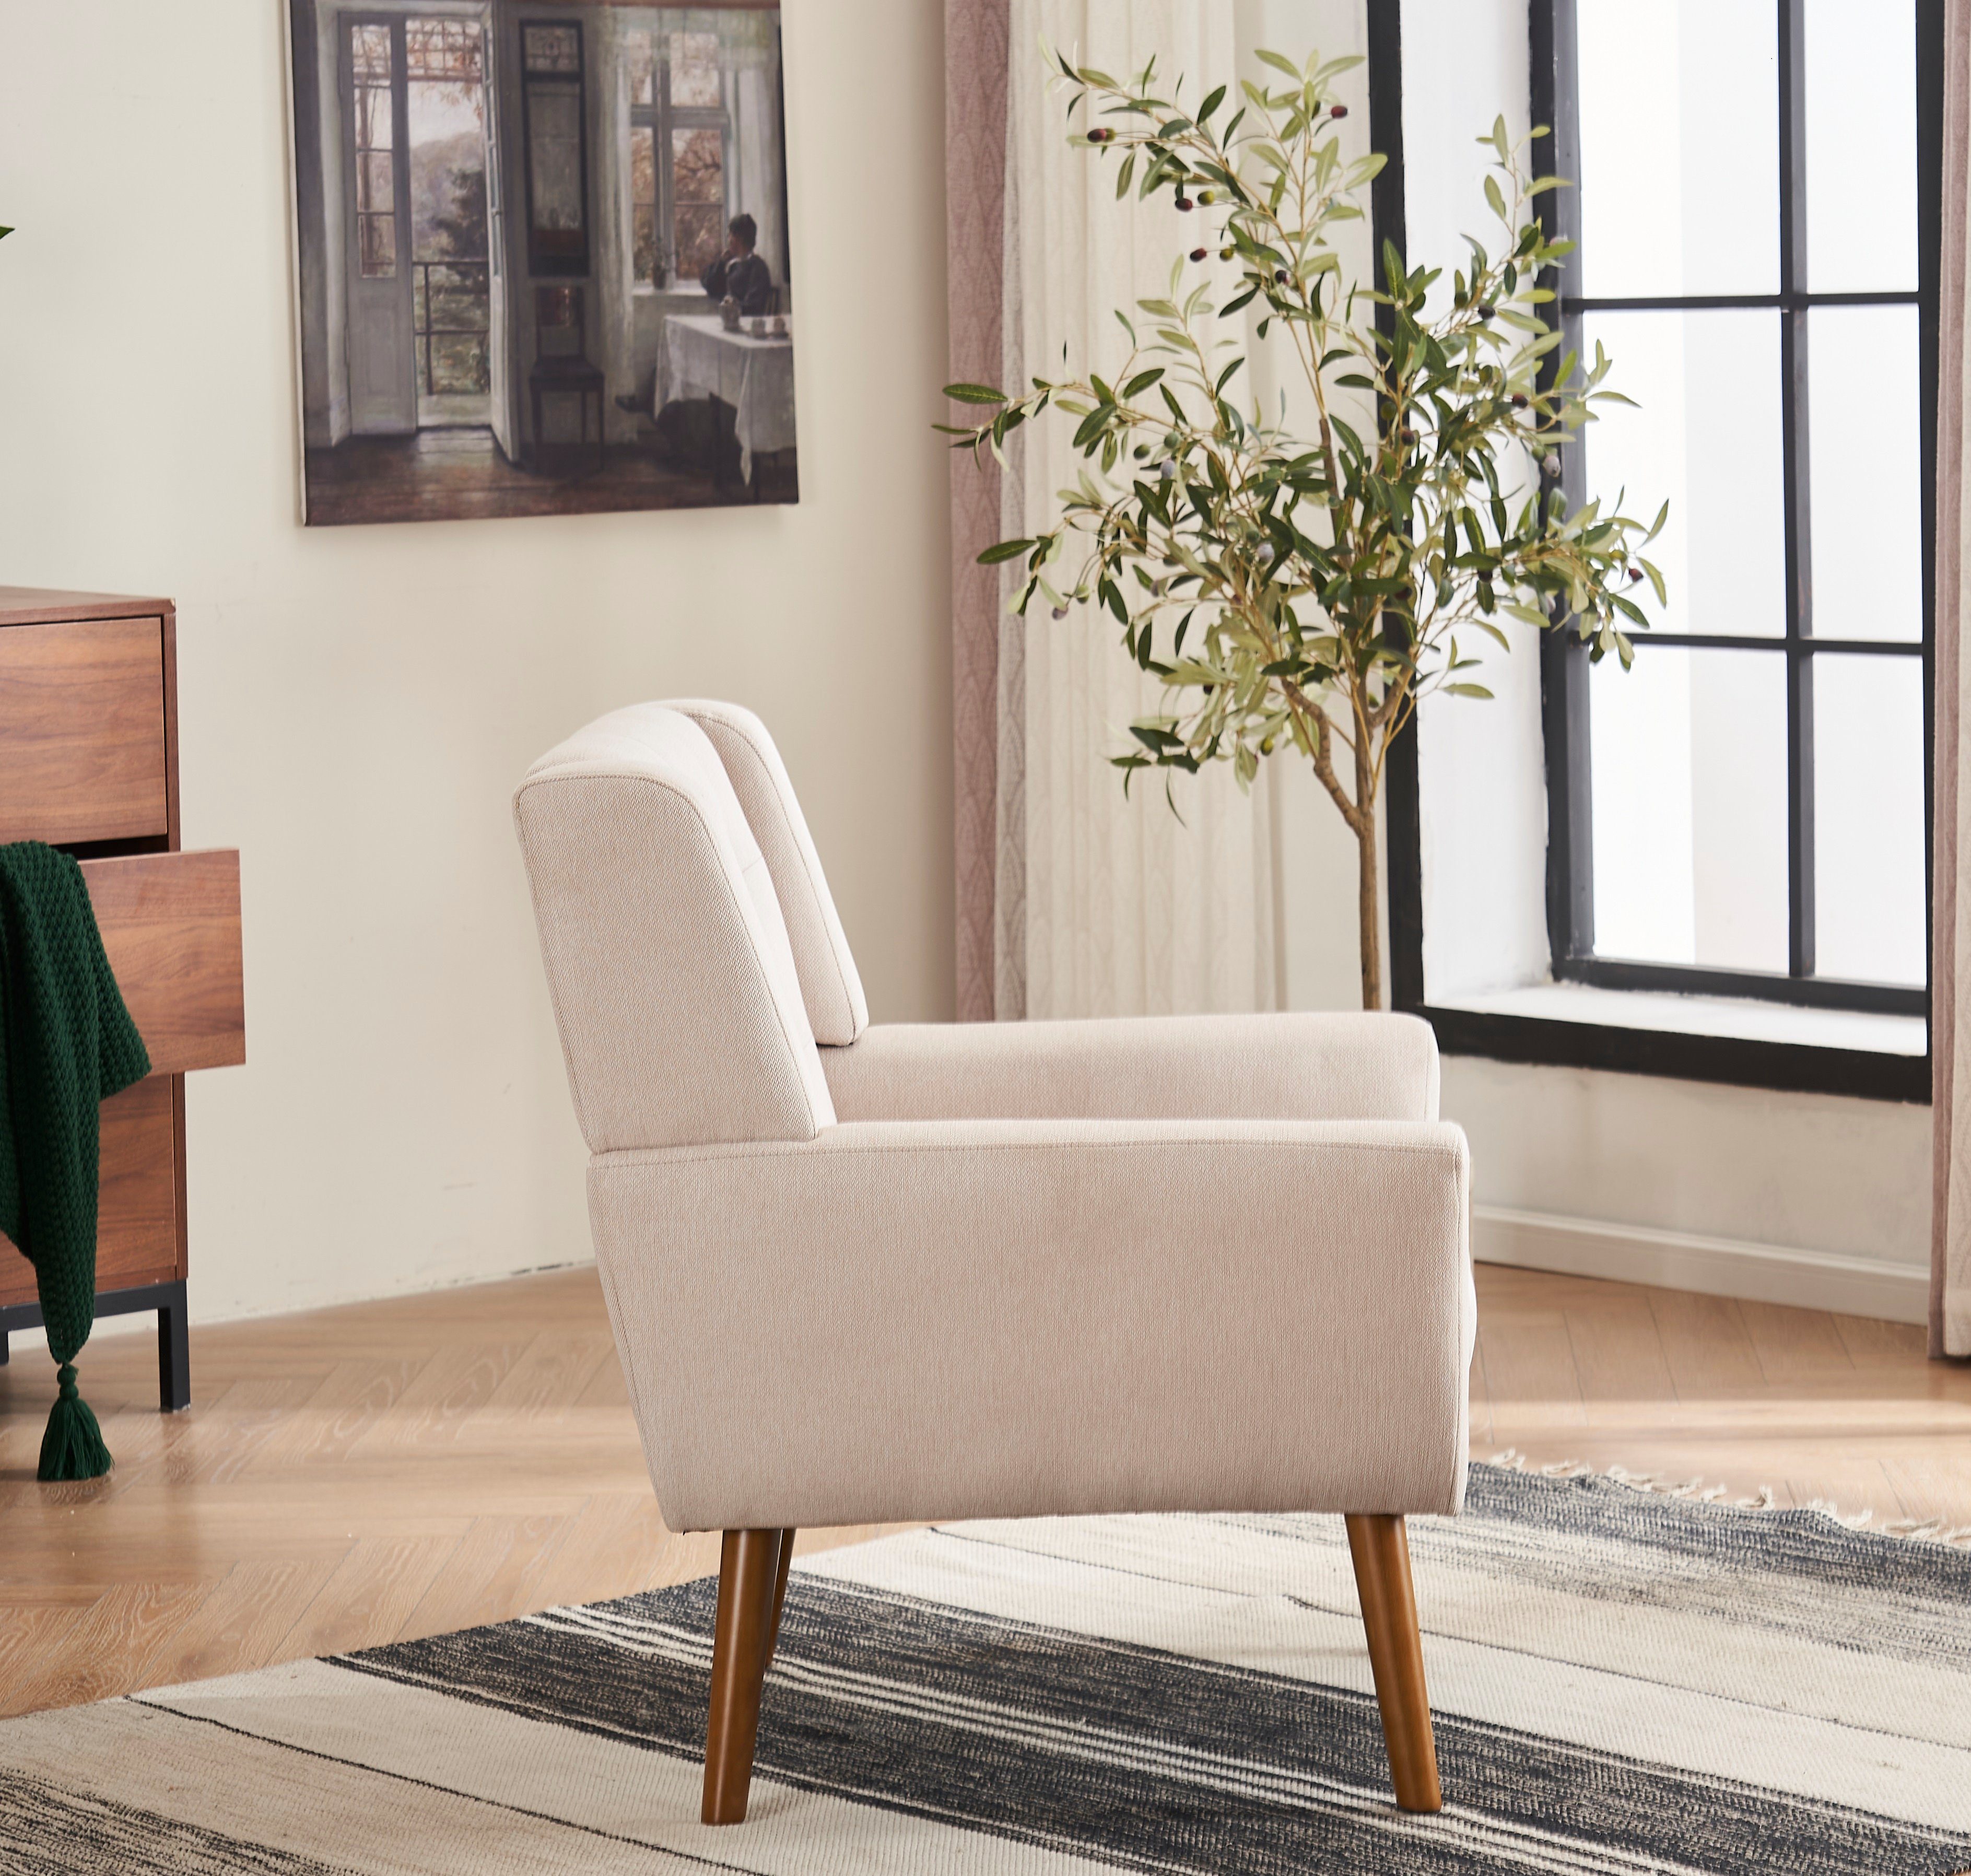 DOTMALL Armlehnstuhl Mid Century Modern Nussbaum Beige und Fabric Armlehnstuhl